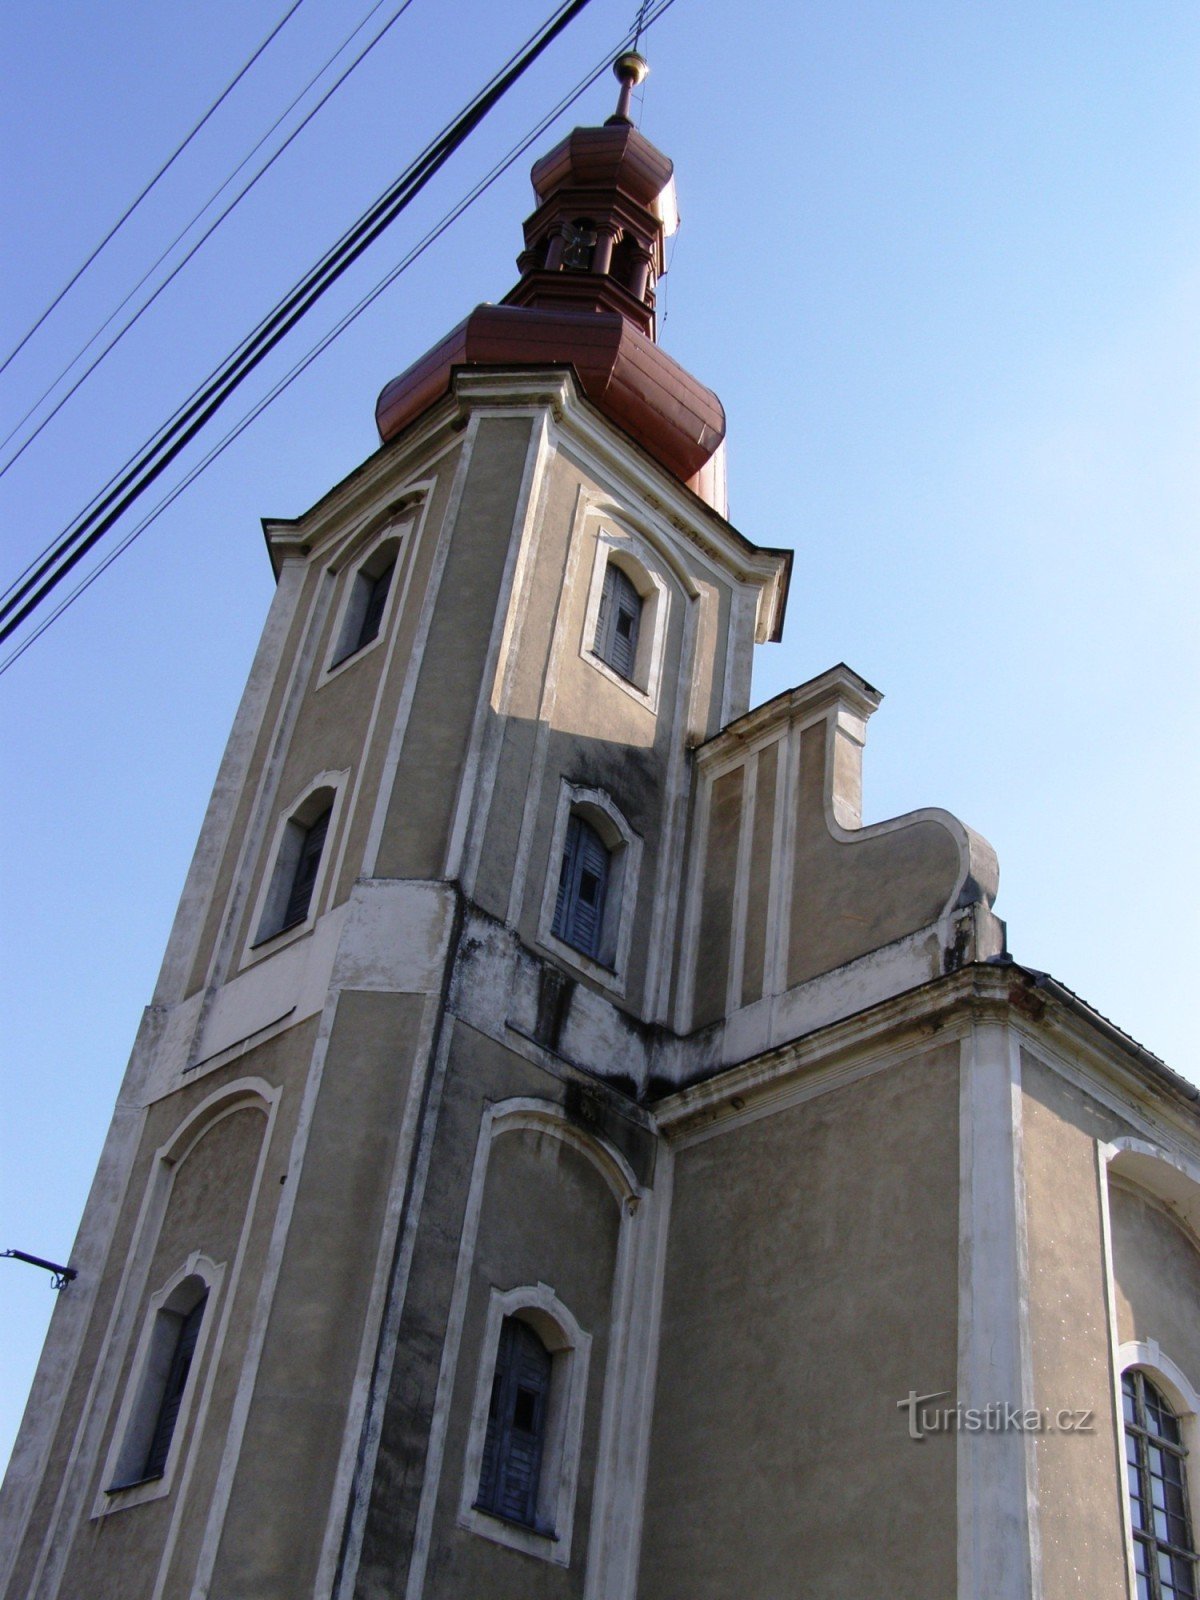 Domašov - crkva sv. Tomas